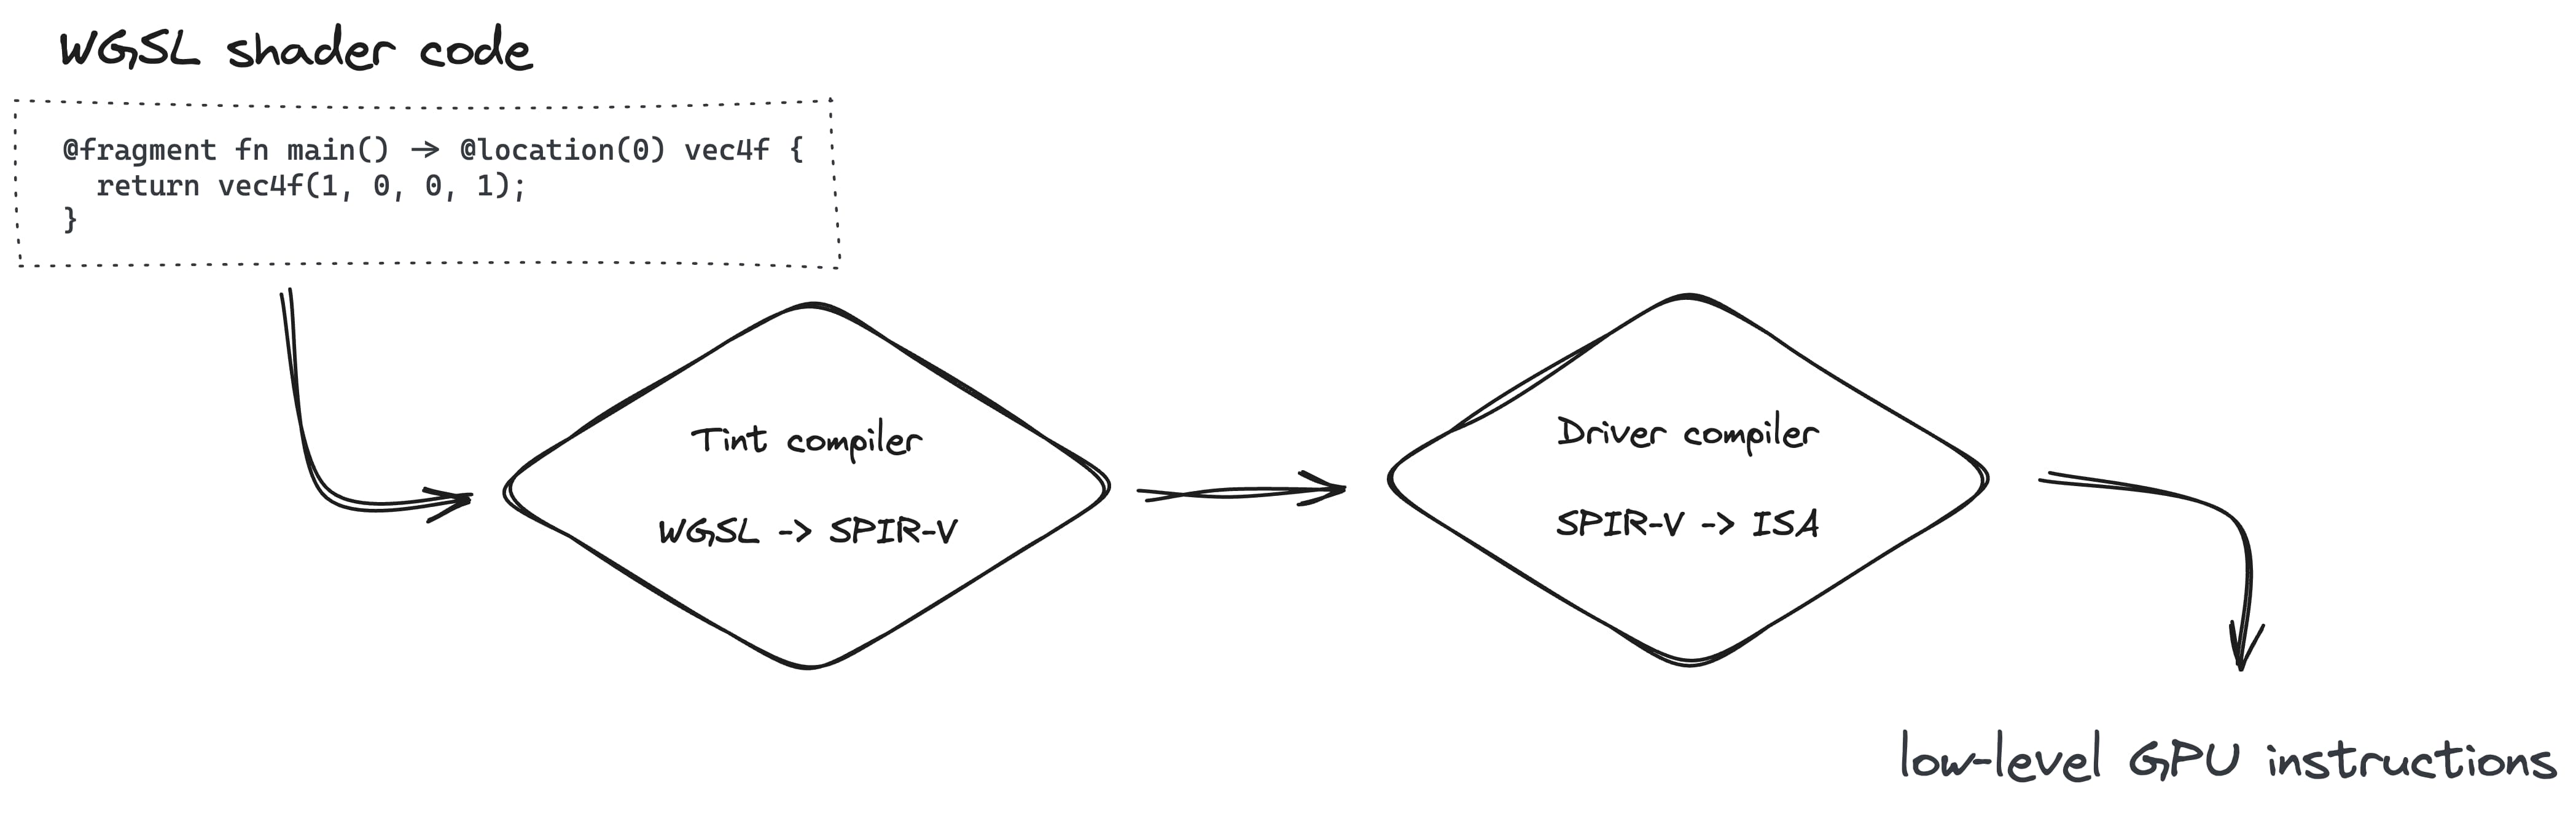 ایجاد خط لوله رندر شامل تبدیل WGSL به SPIR-V با کامپایلر Tint و سپس به ISA با کامپایلر Driver است.